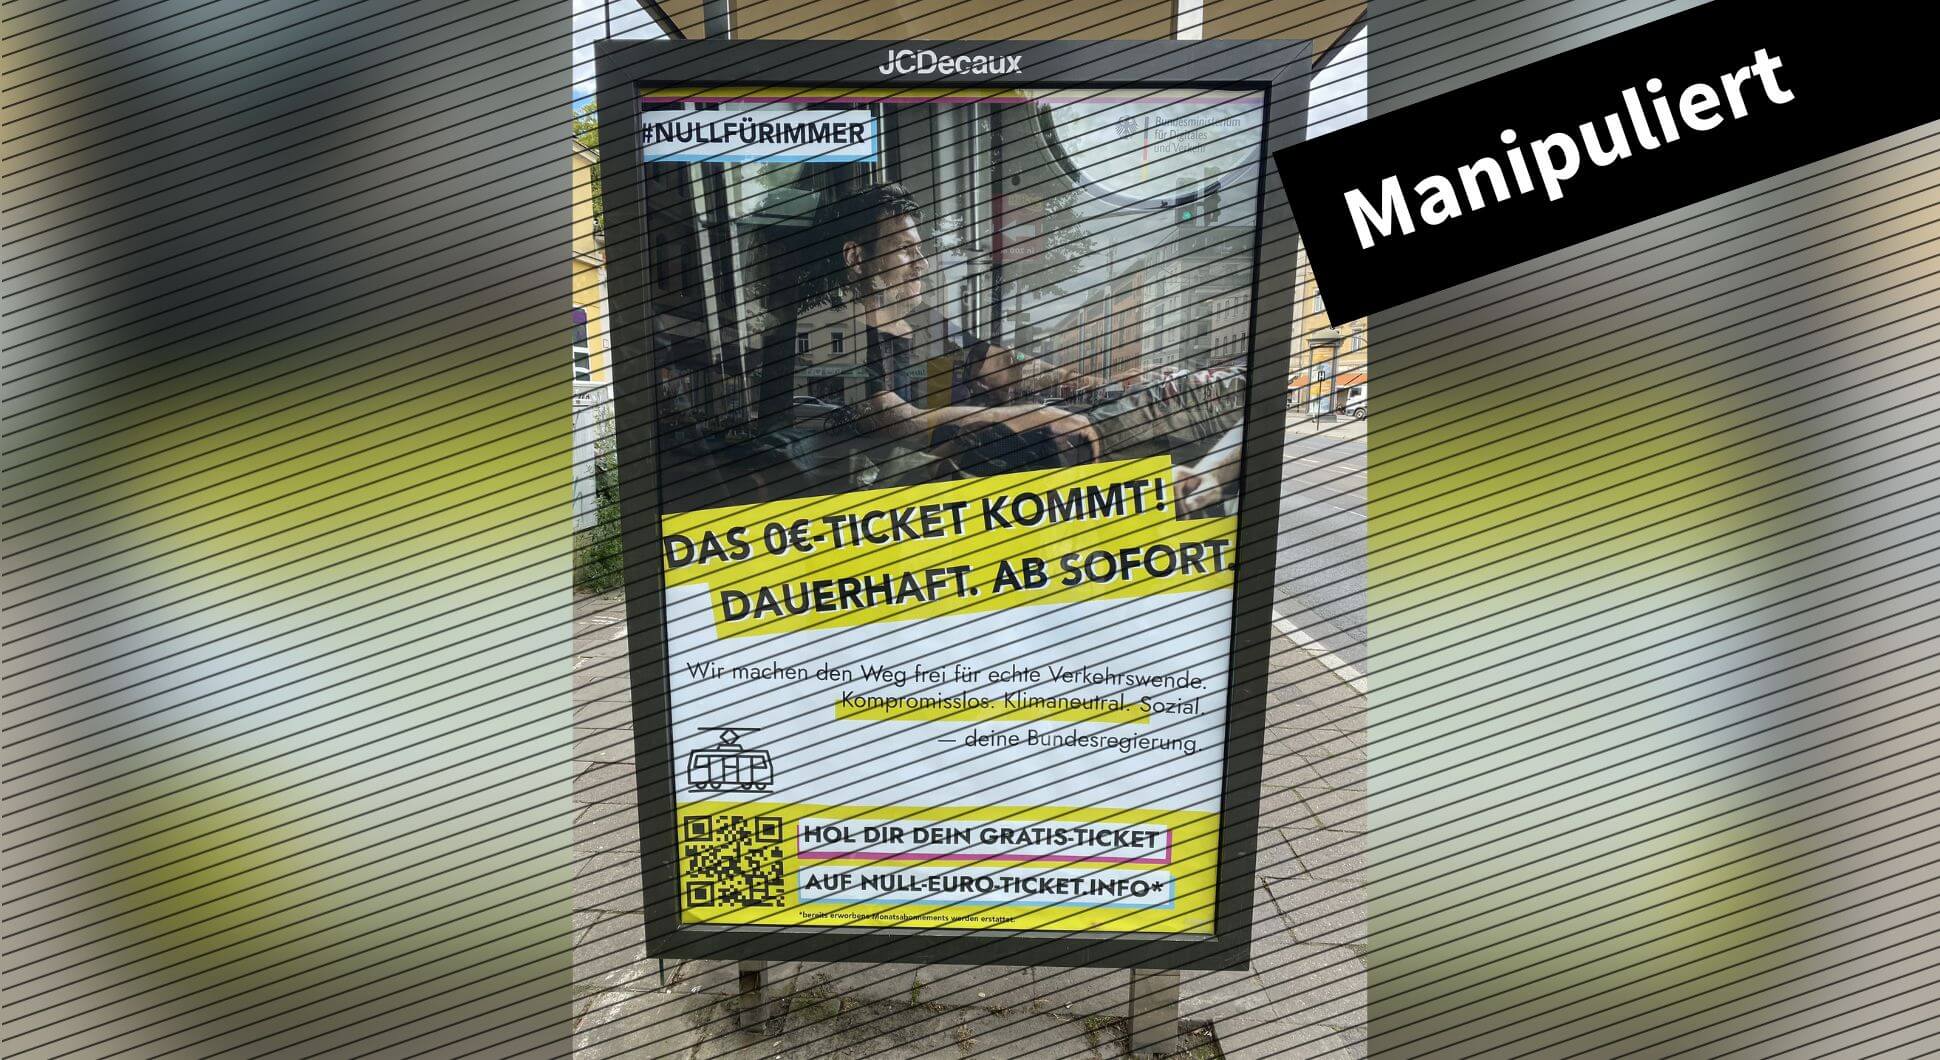 Fotos von angeblichen Werbeplakaten des Verkehrsministeriums kursieren in Sozialen Netzwerken. Es handelt sich um Fälschungen.